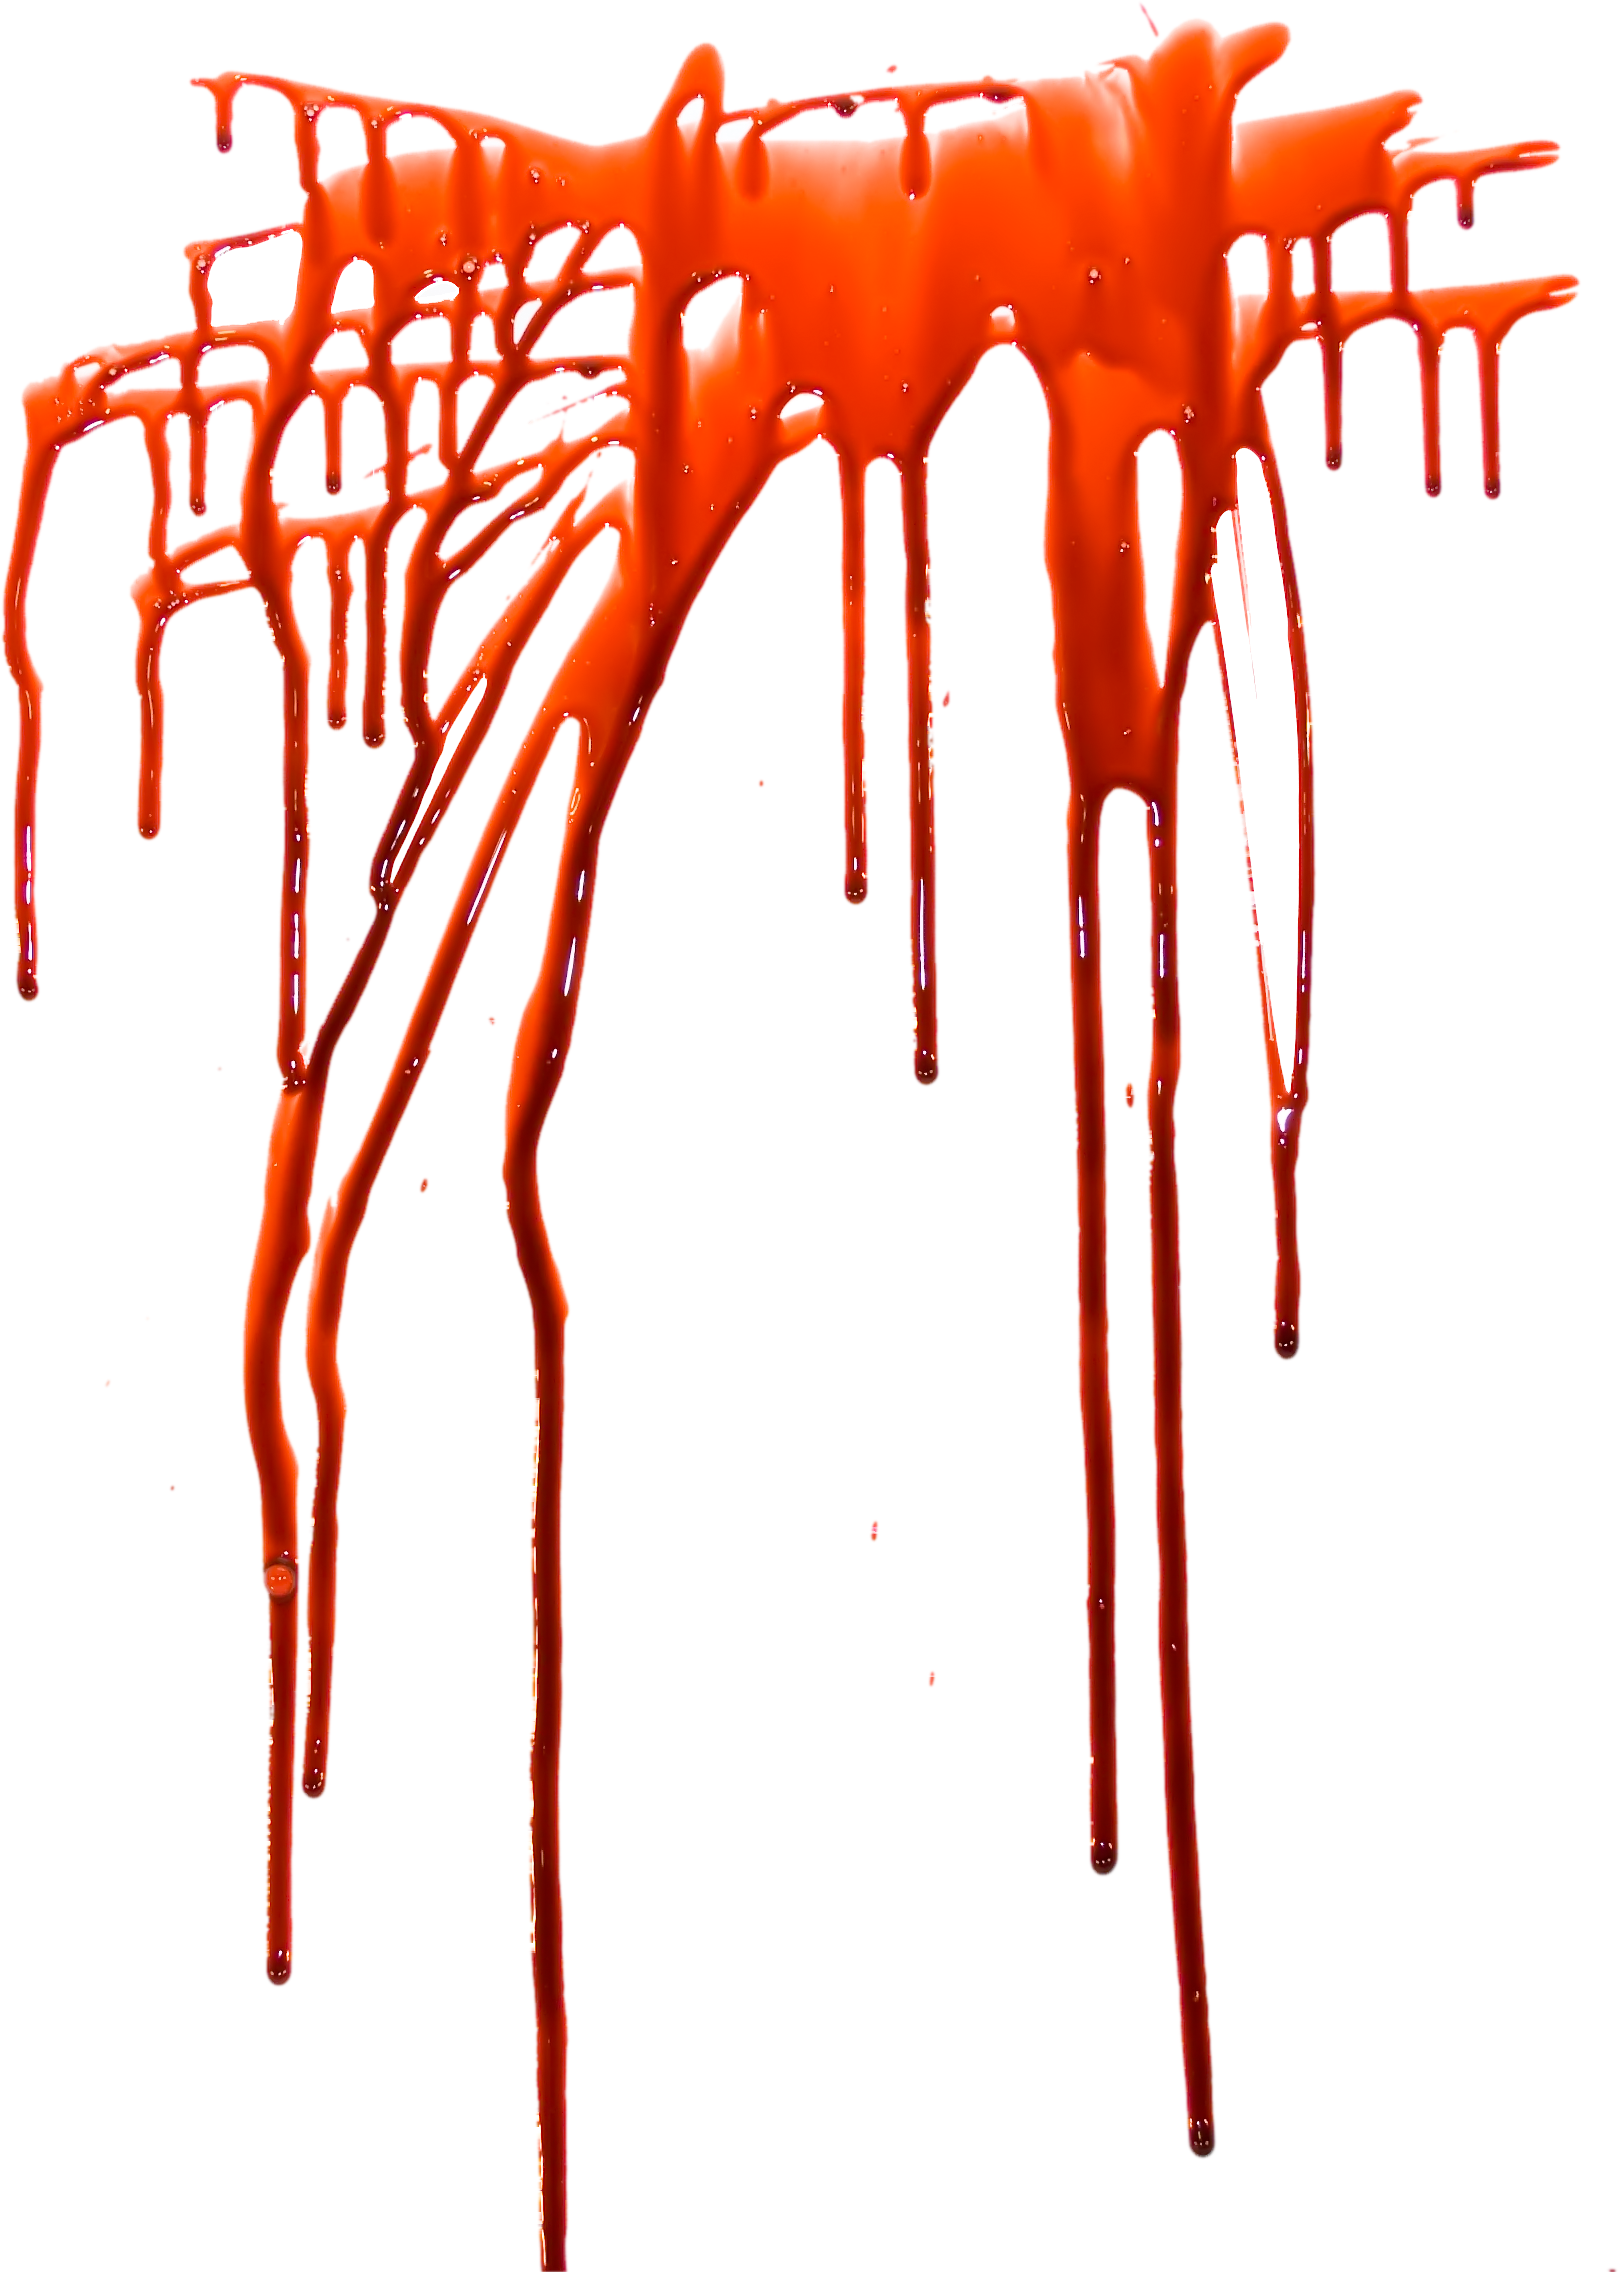 Blood Splatter Png | Free download on ClipArtMag